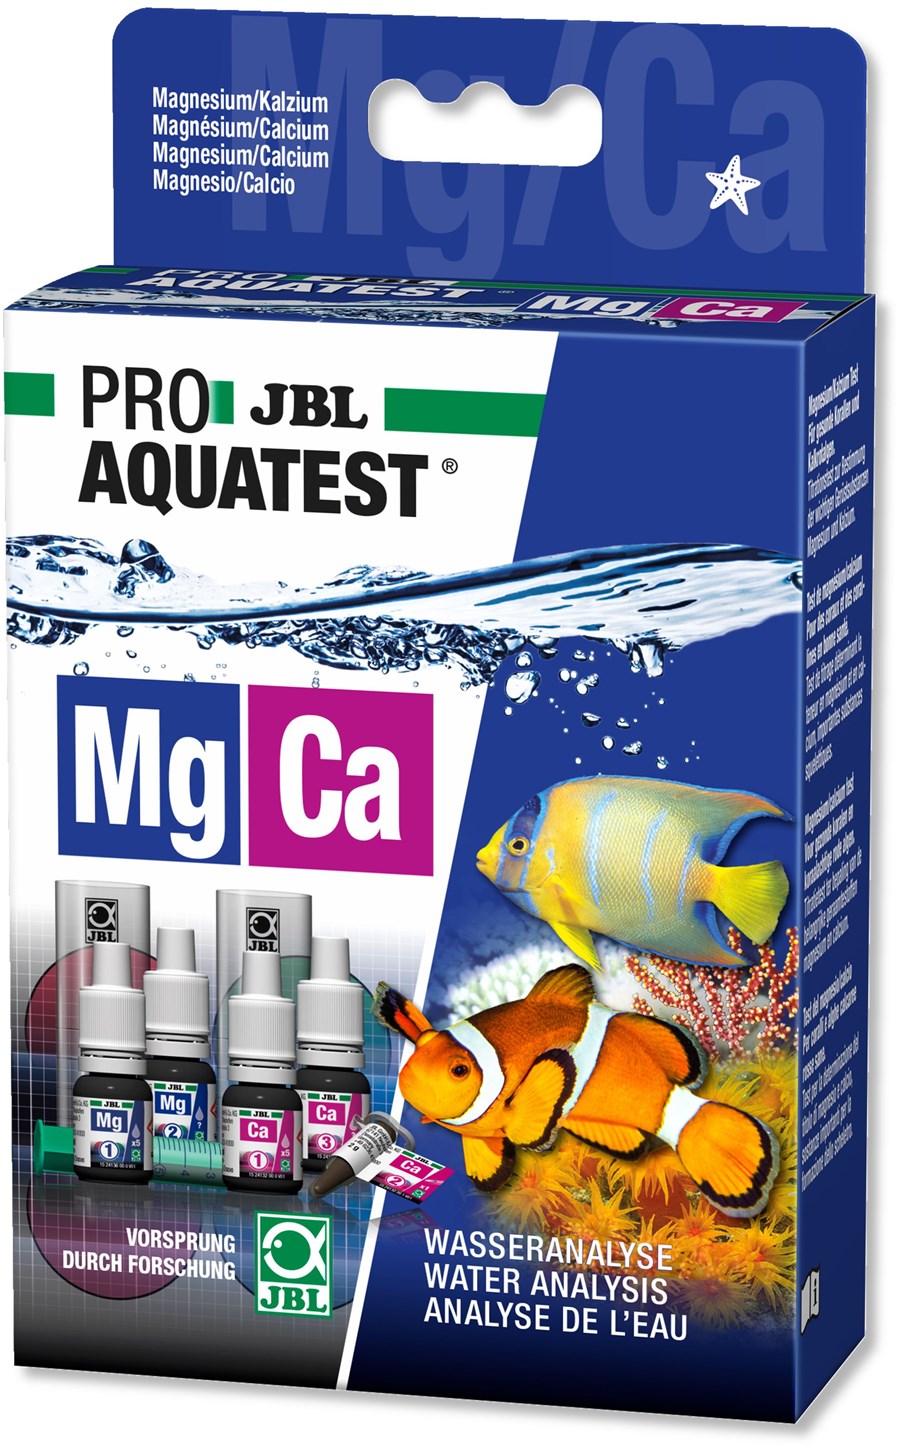 JBL PROAQUATEST Mg/Ca Magnésium/Calcium